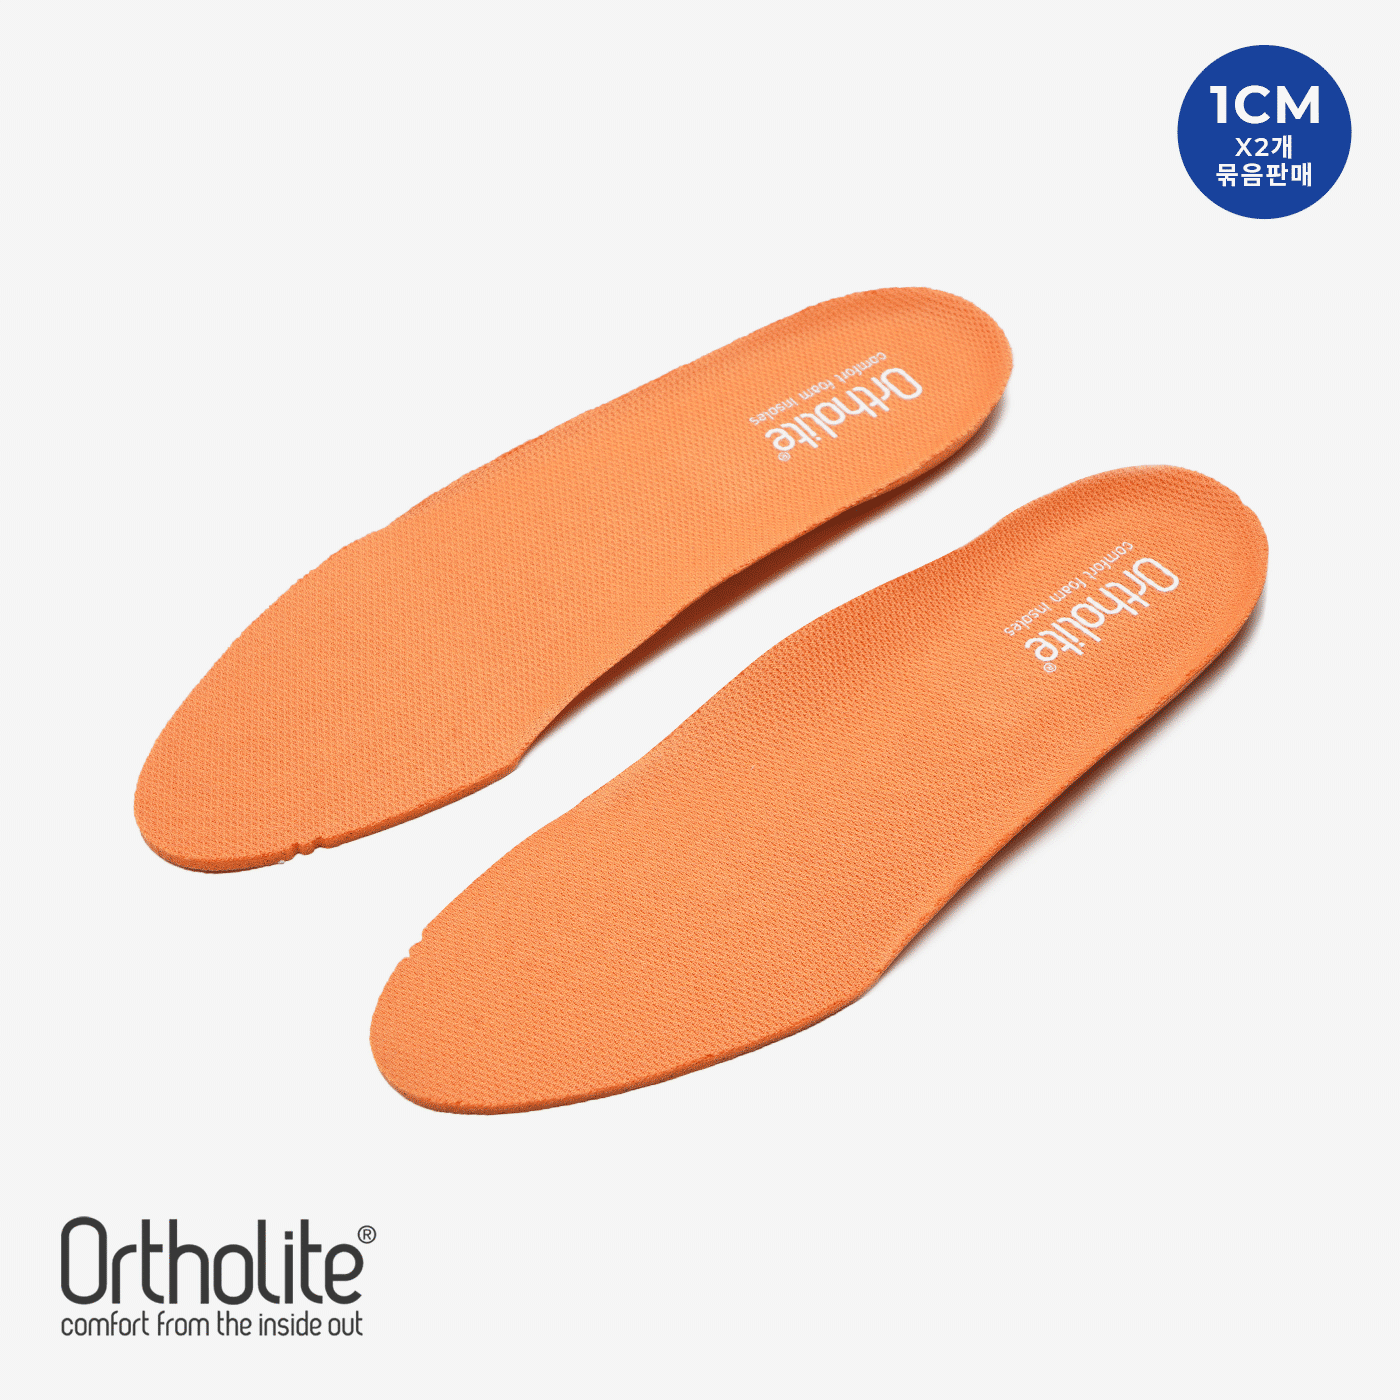 오솔라이트 1cm 키높이 오렌지&amp;그레이 인솔 (Ortholite System Orange&amp;Grey Insole) 2개 묶음상품